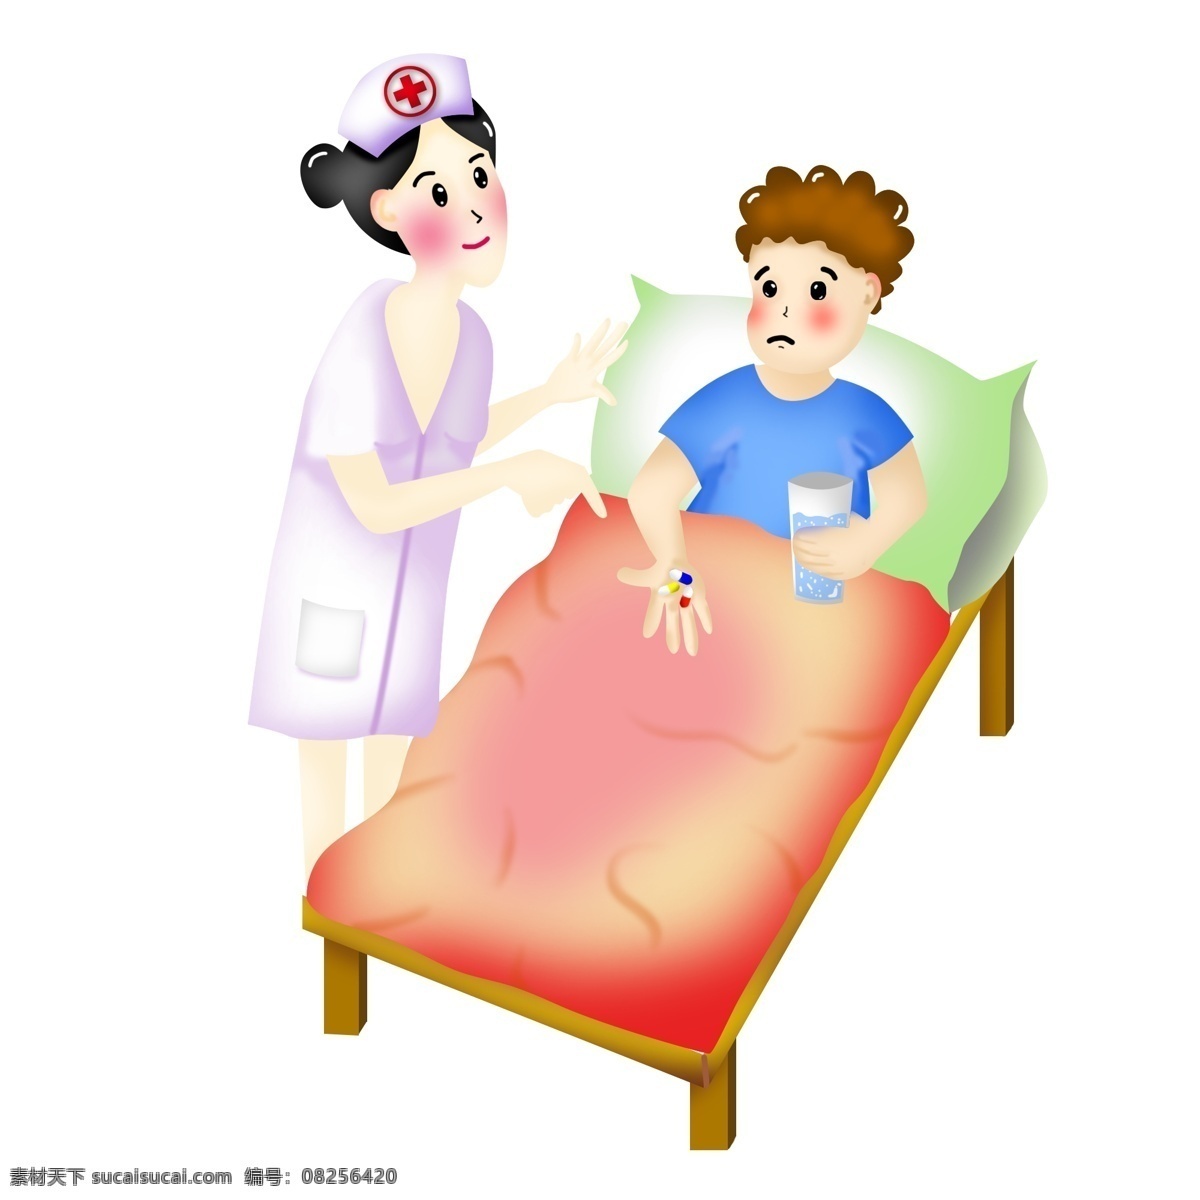 国际护士节 卡通 护士 监督 病人 吃药 床上的病人 照顾